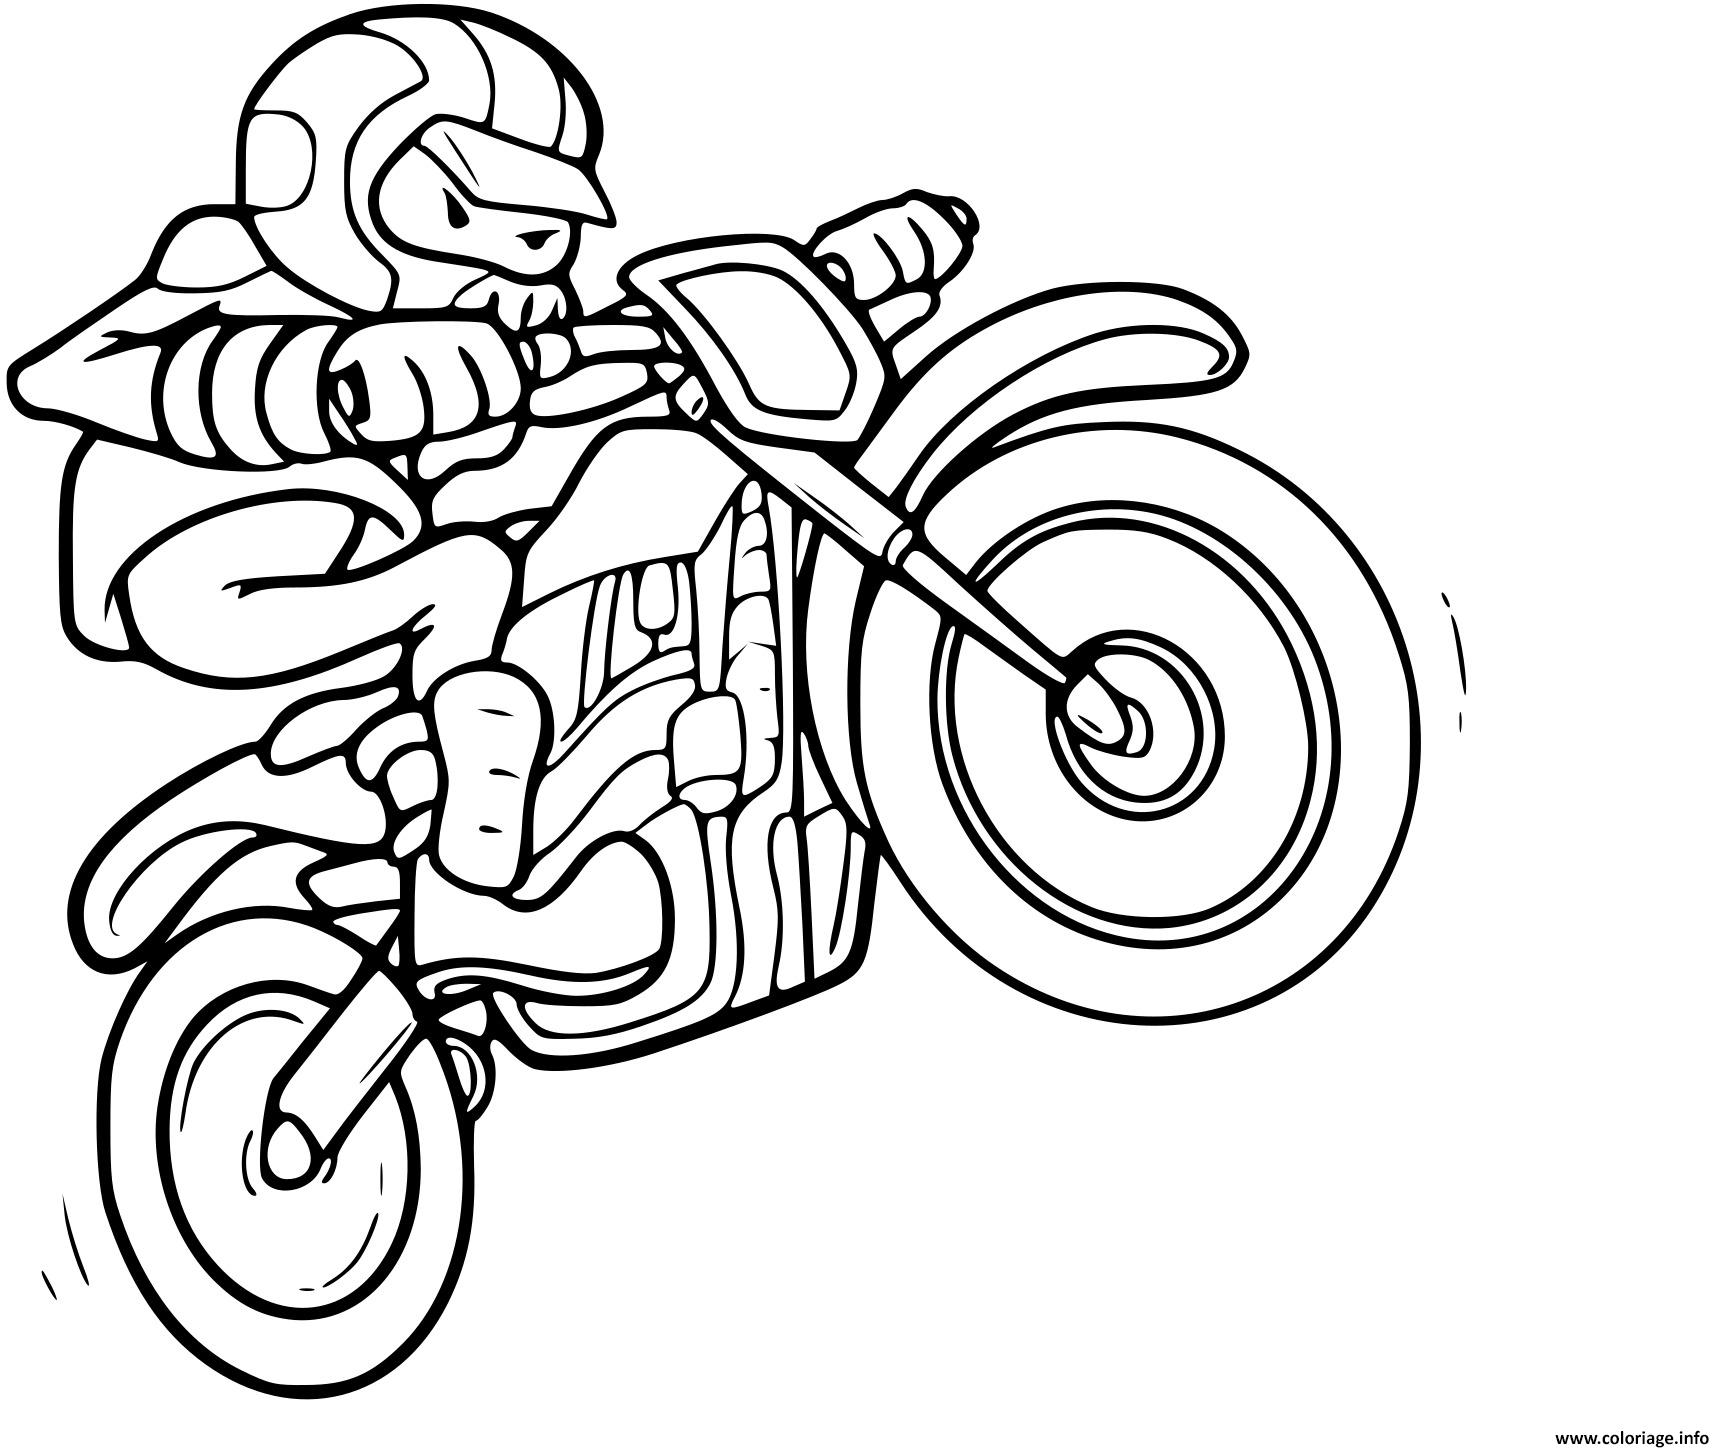 Coloriage Moto-cross et petit saut